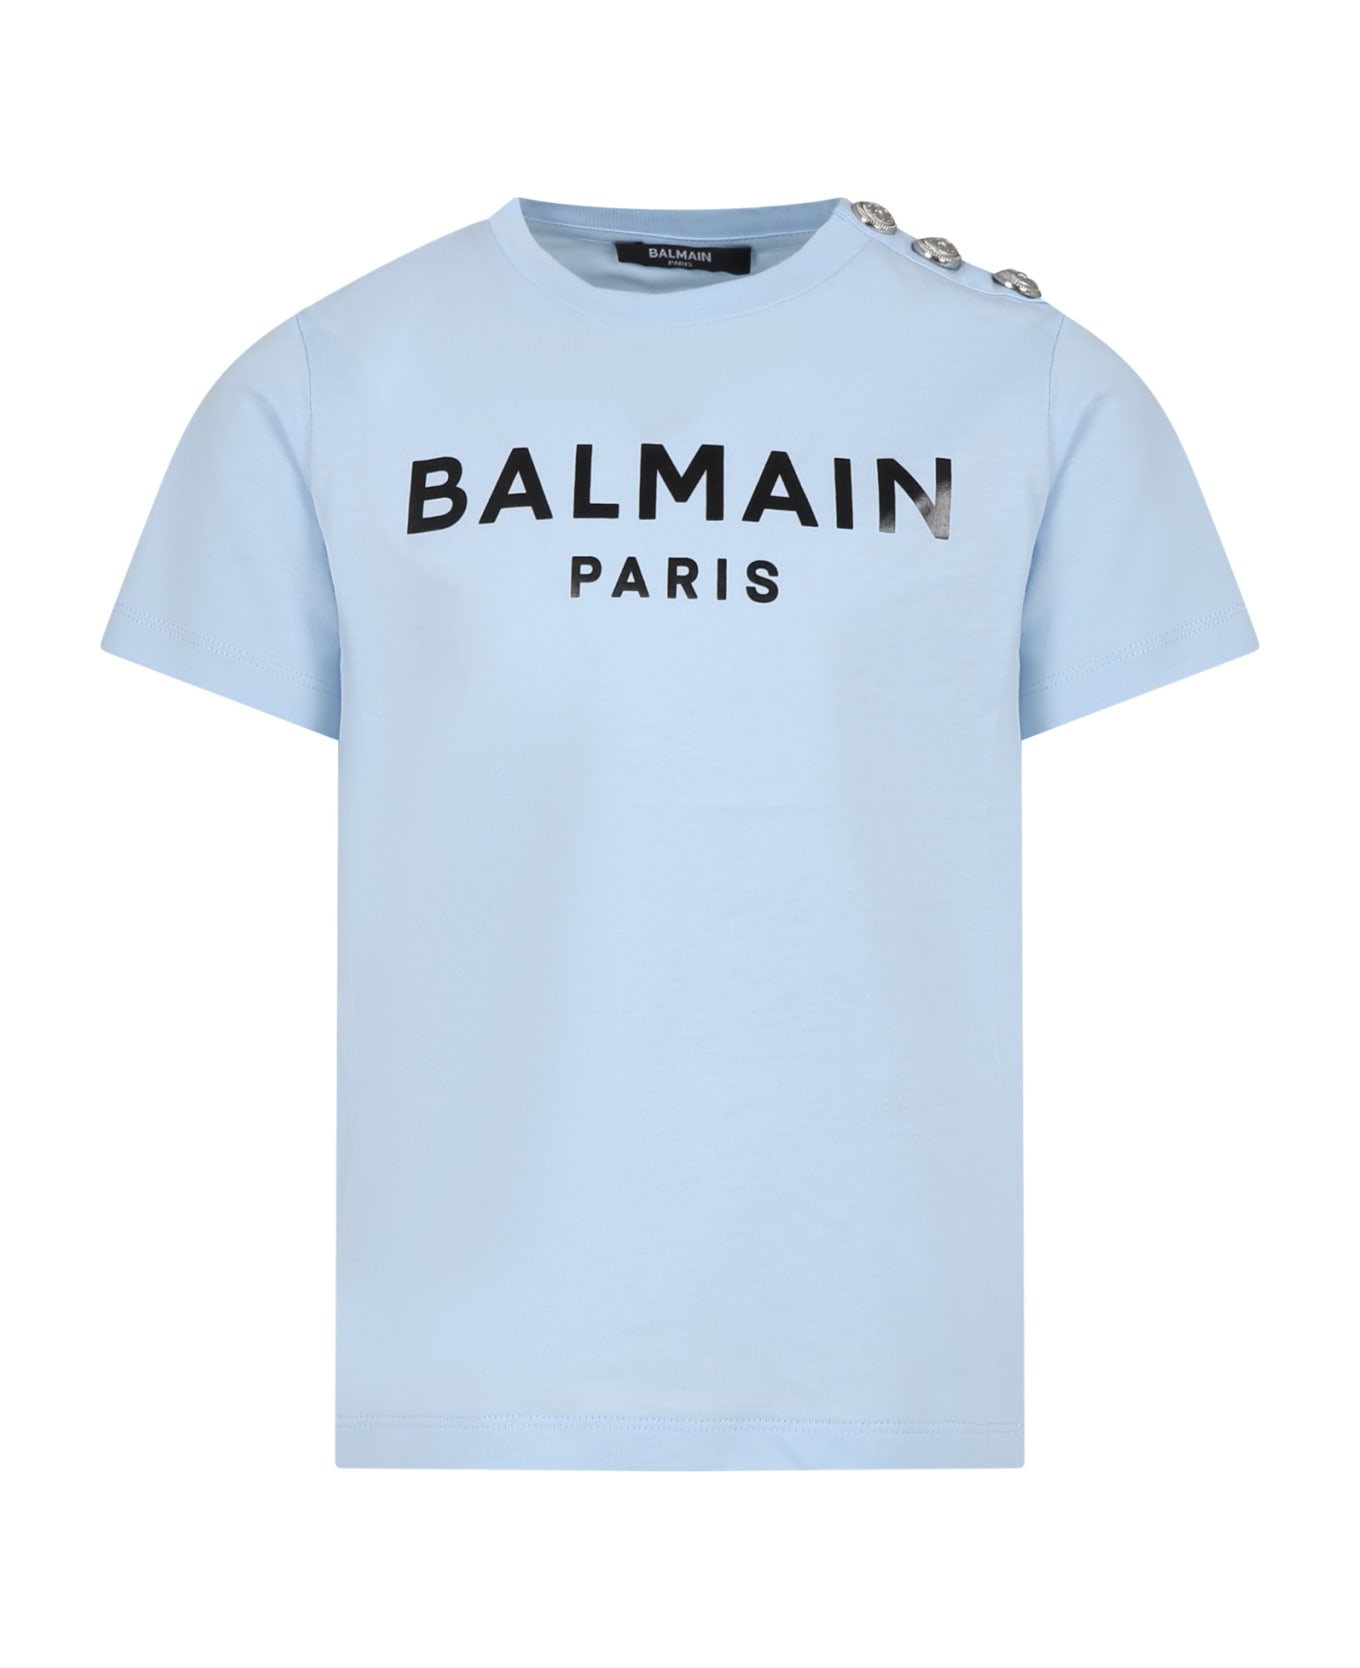 Balmain Light Blue T-shirt For Kids With Logo - Light Blue